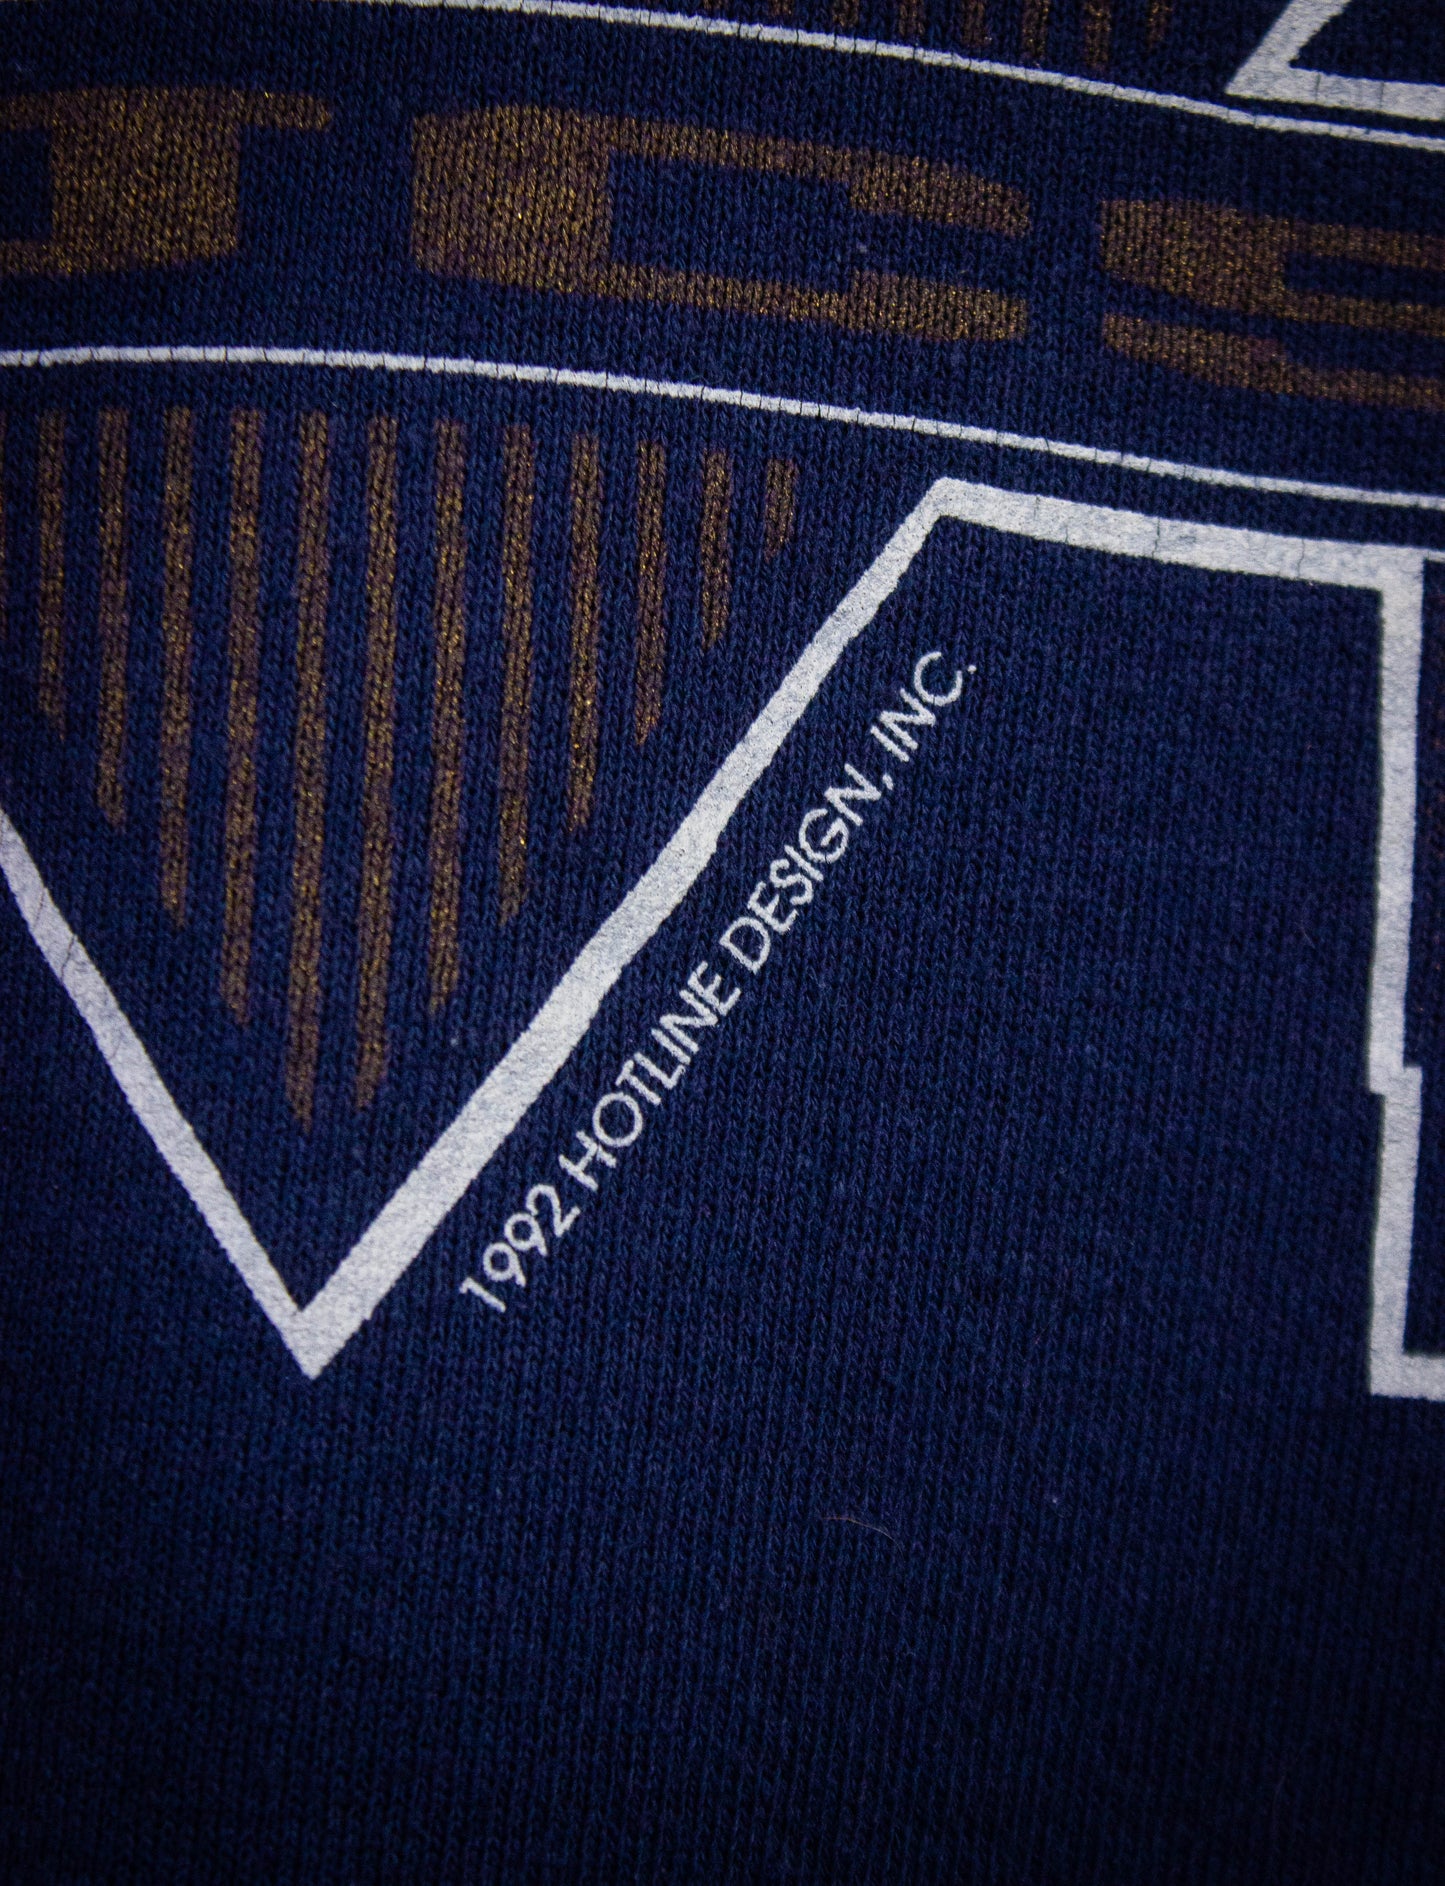 Vintage Eastern Tenenssee Buccaneers Graphic Sweatshirt 1992 Navy Blue Small